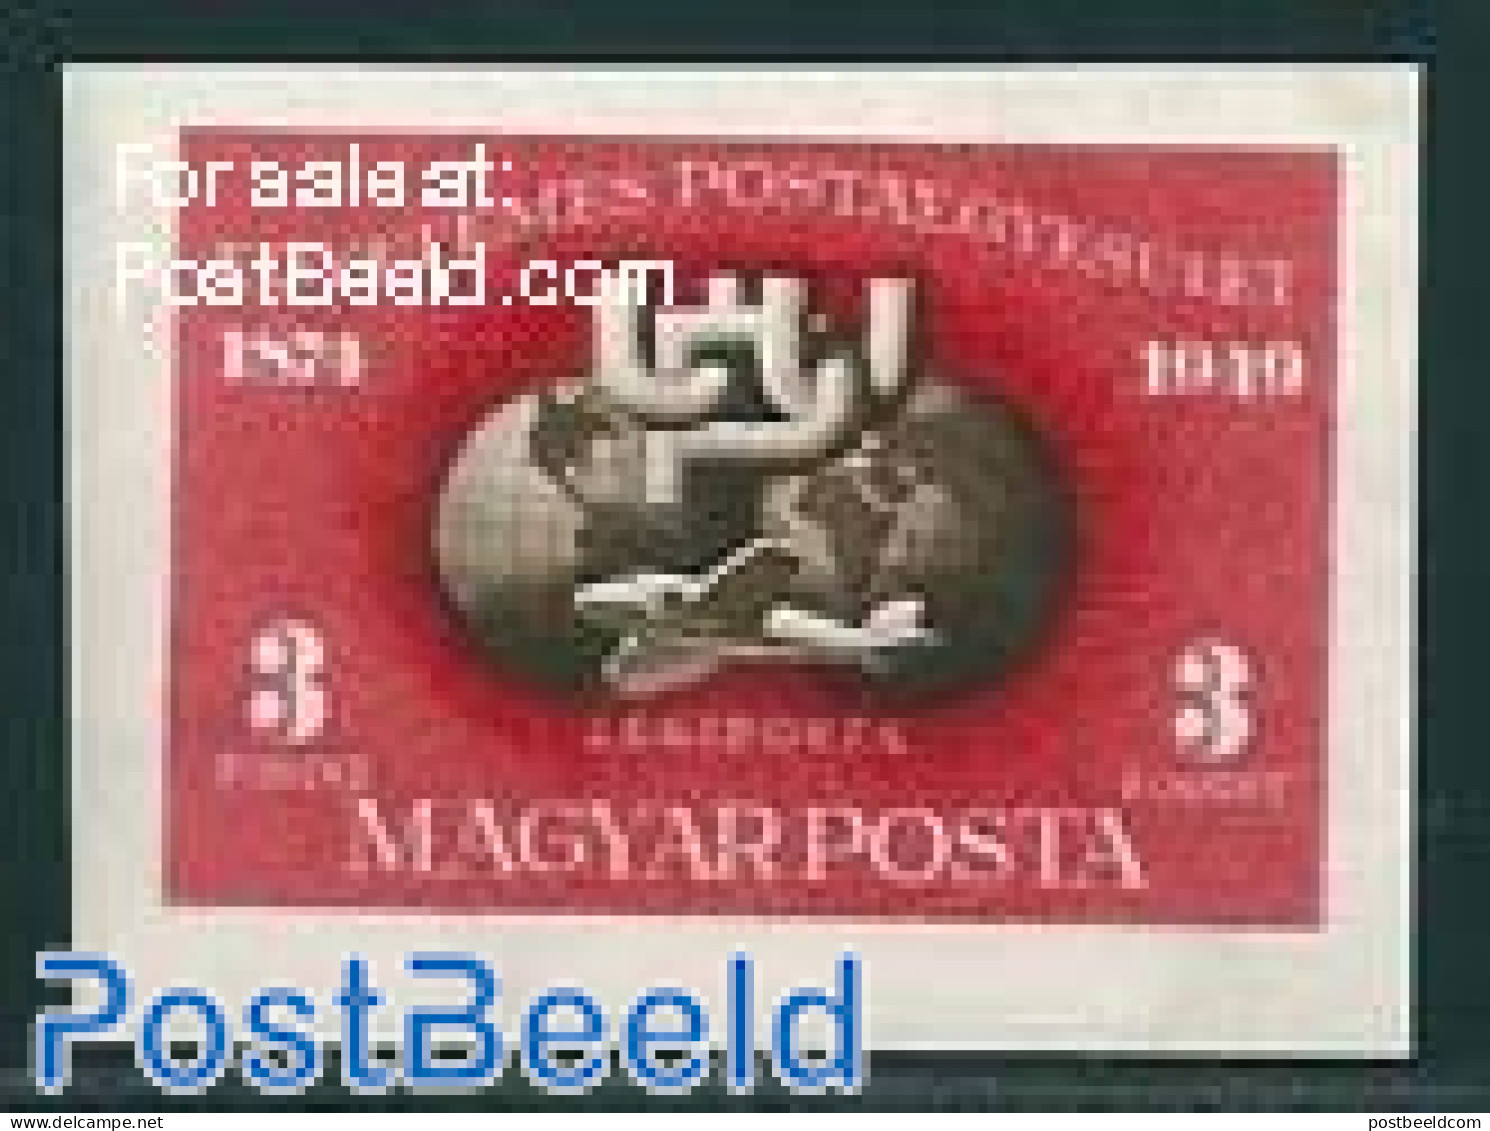 Hungary 1950 75 Years UPU 1v, Imperforated, Unused (hinged), U.P.U. - Nuevos